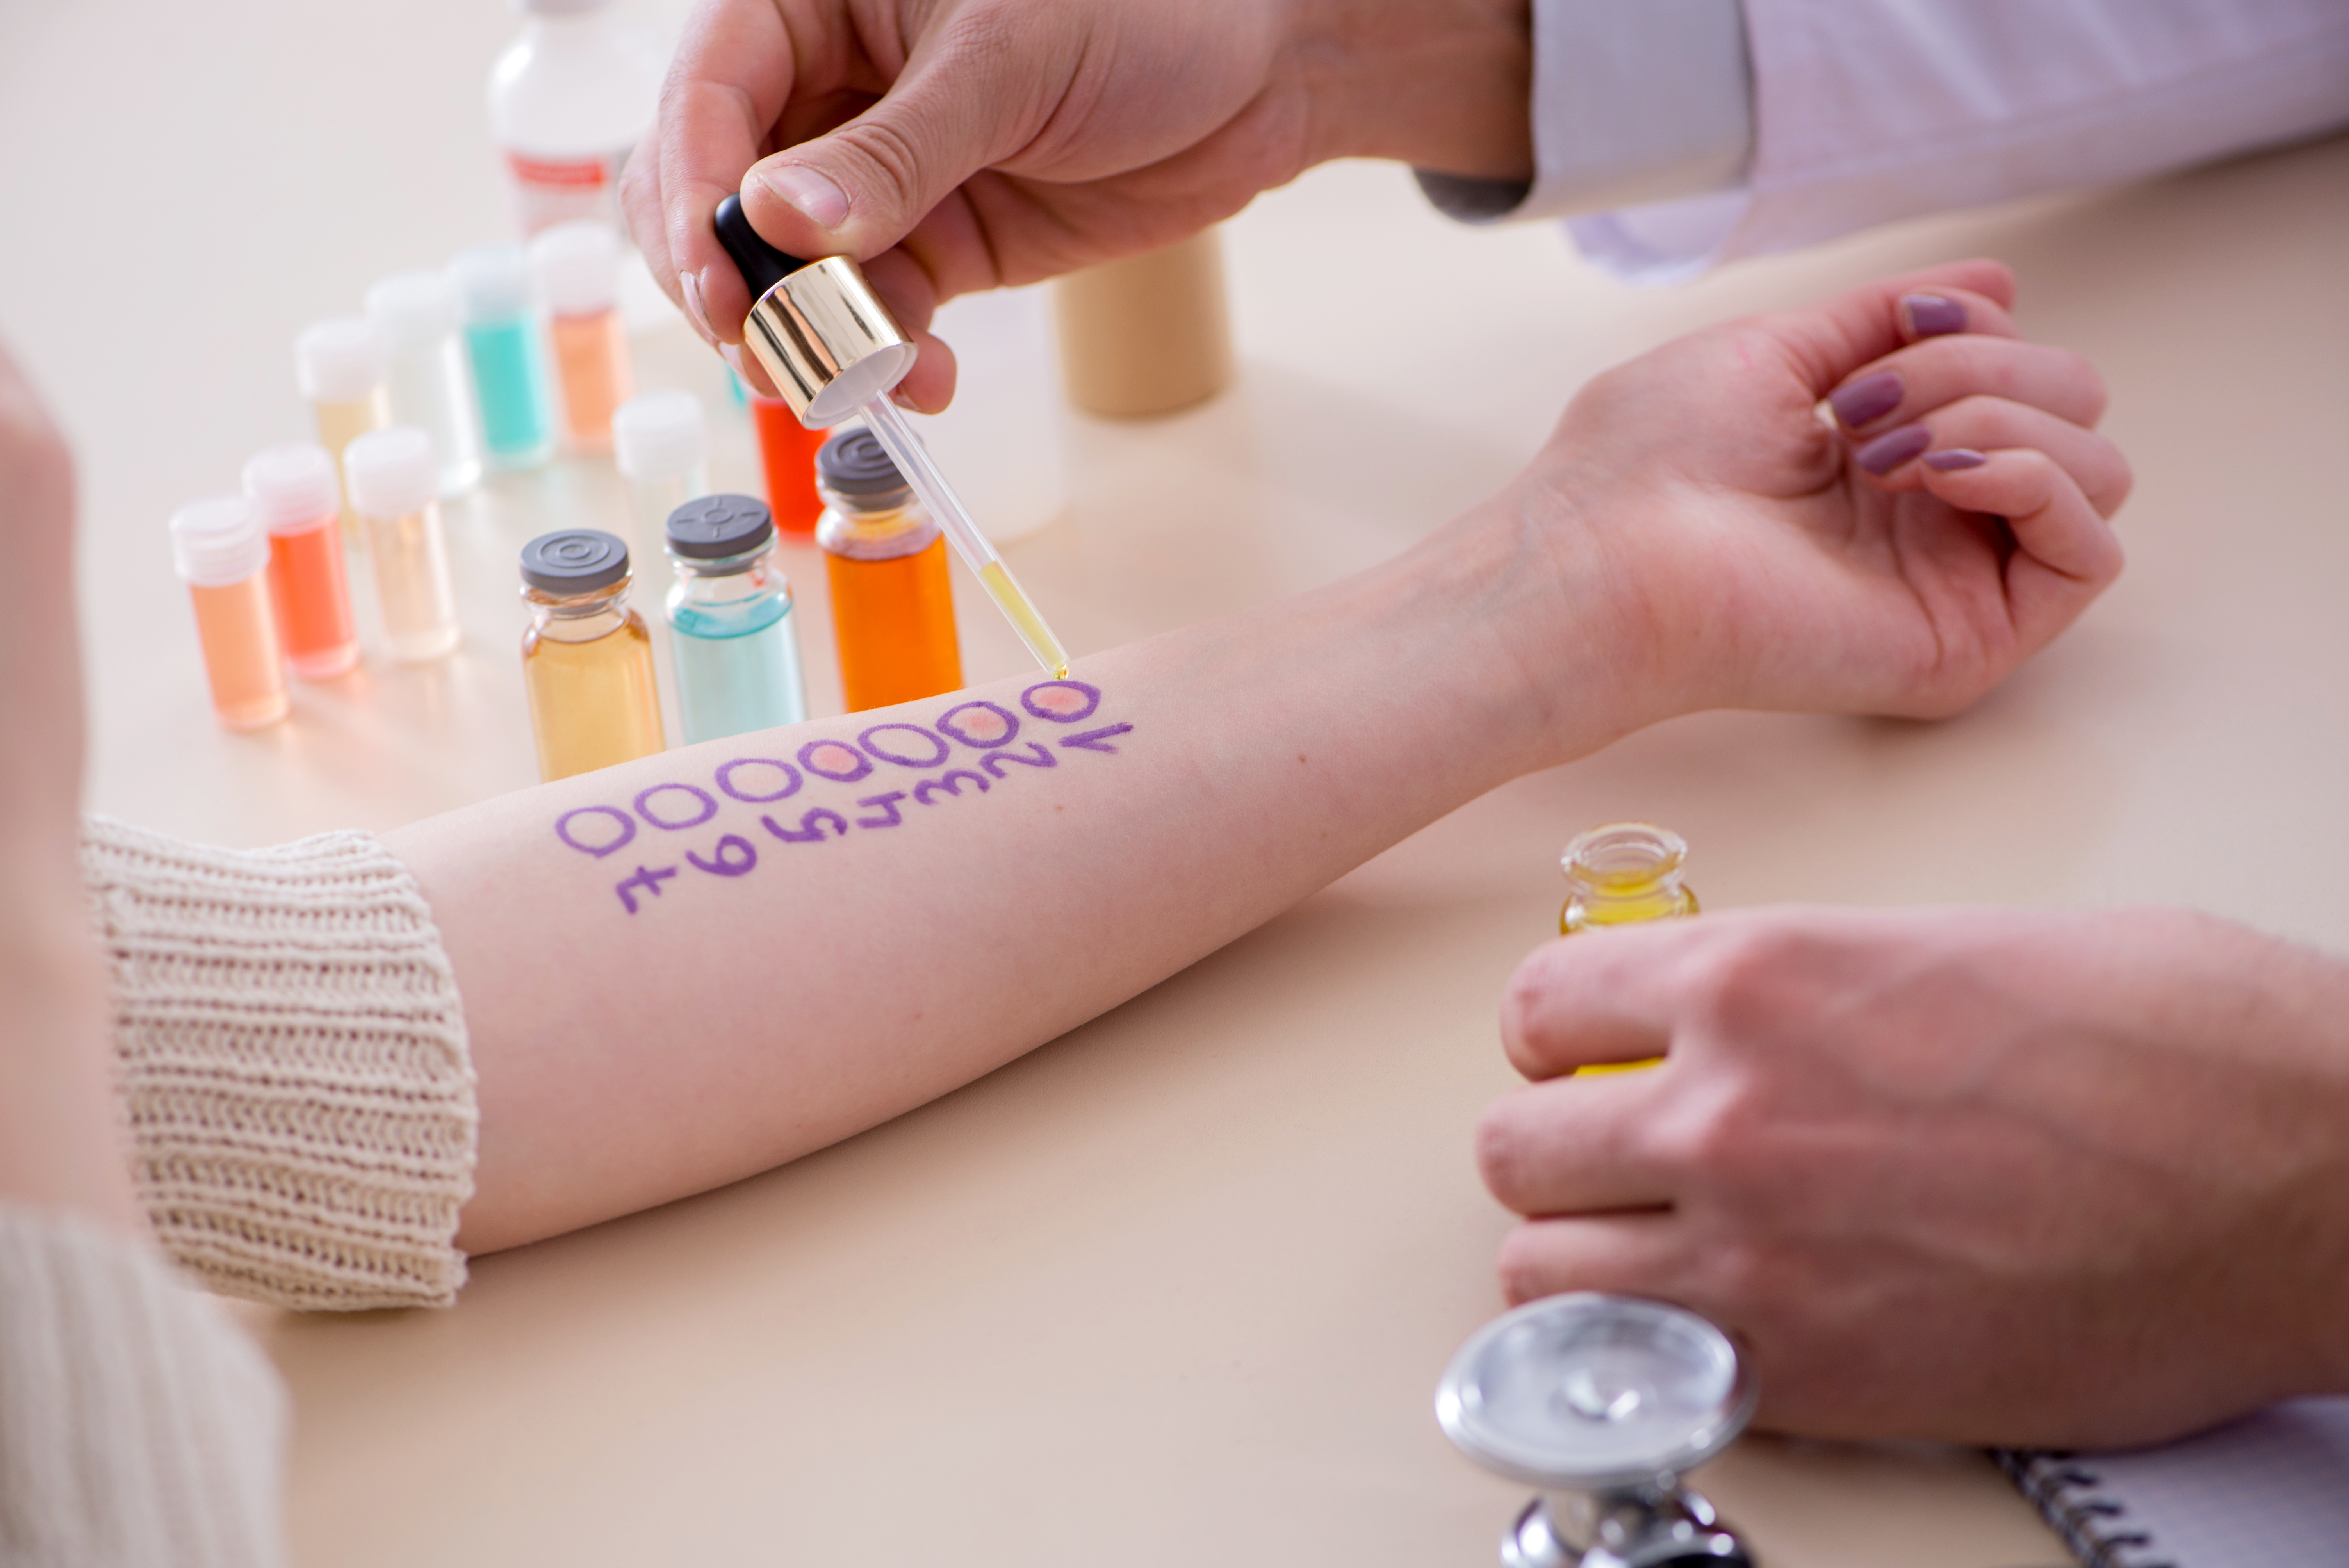 L’allergologue procède à des tests cutanés afin de déterminer les allergies de son patient. © Elnur, Adobe Stock.